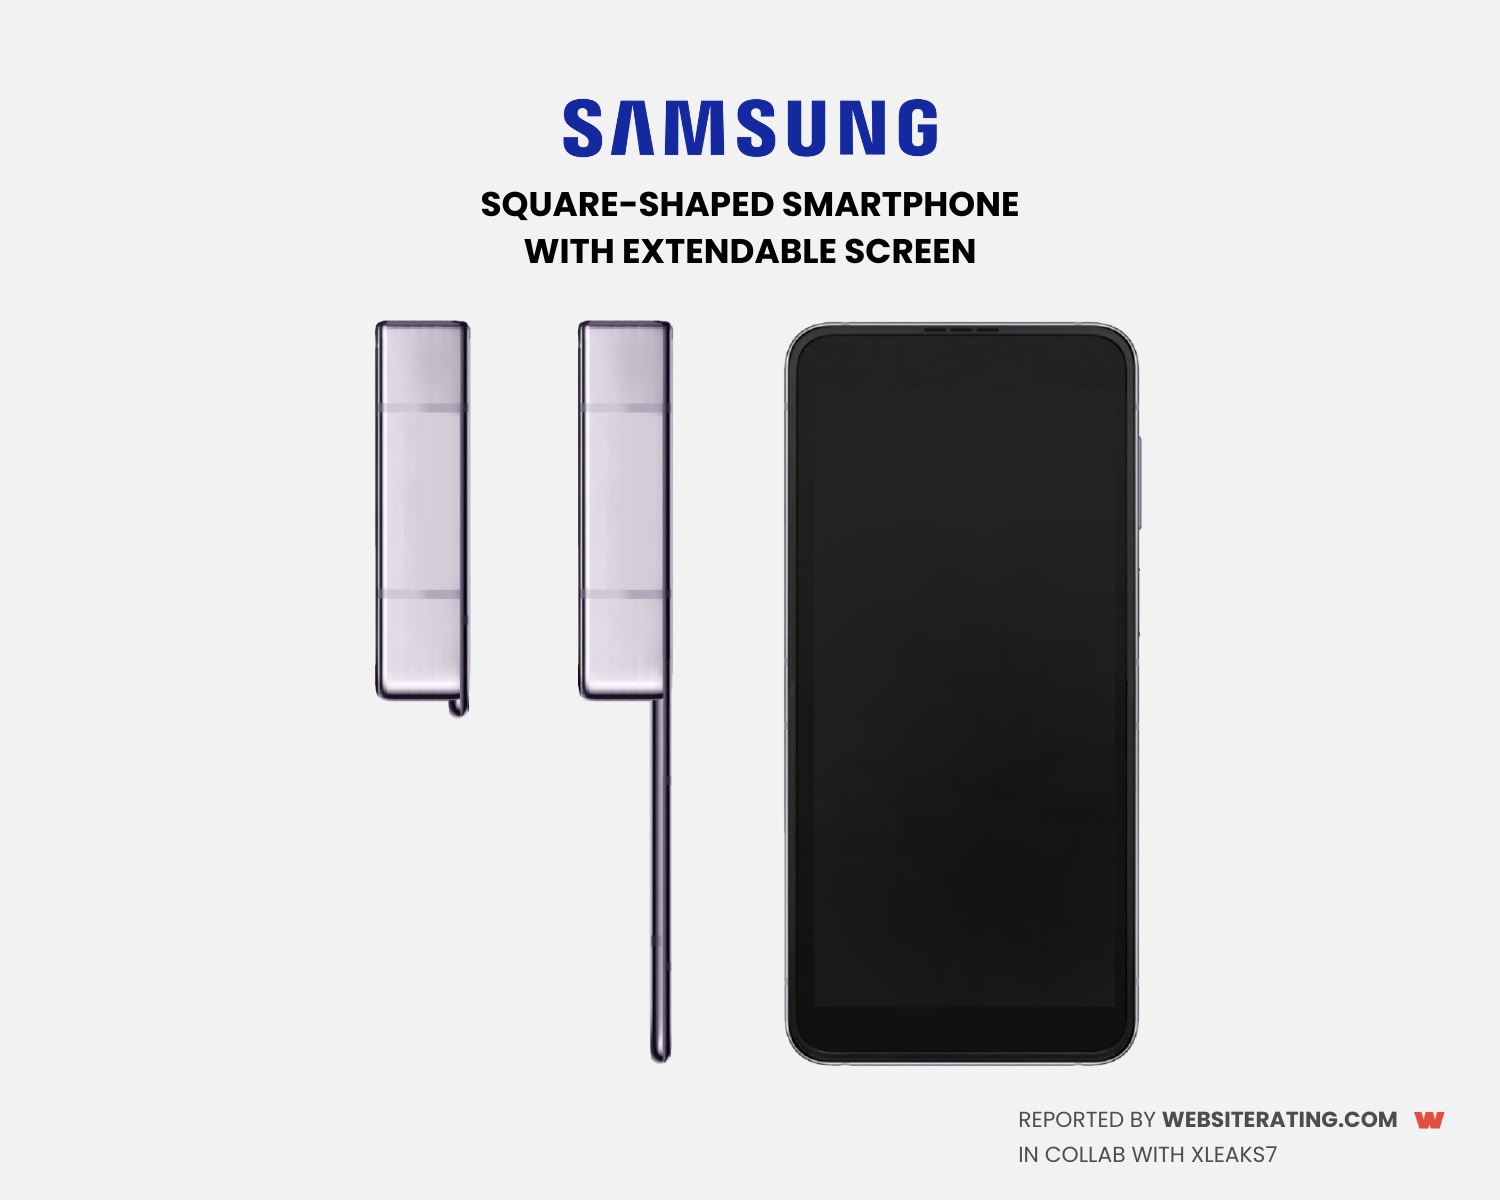 Samsung opatentował kwadratowy smartfon z wysuwanym wyświetlaczem